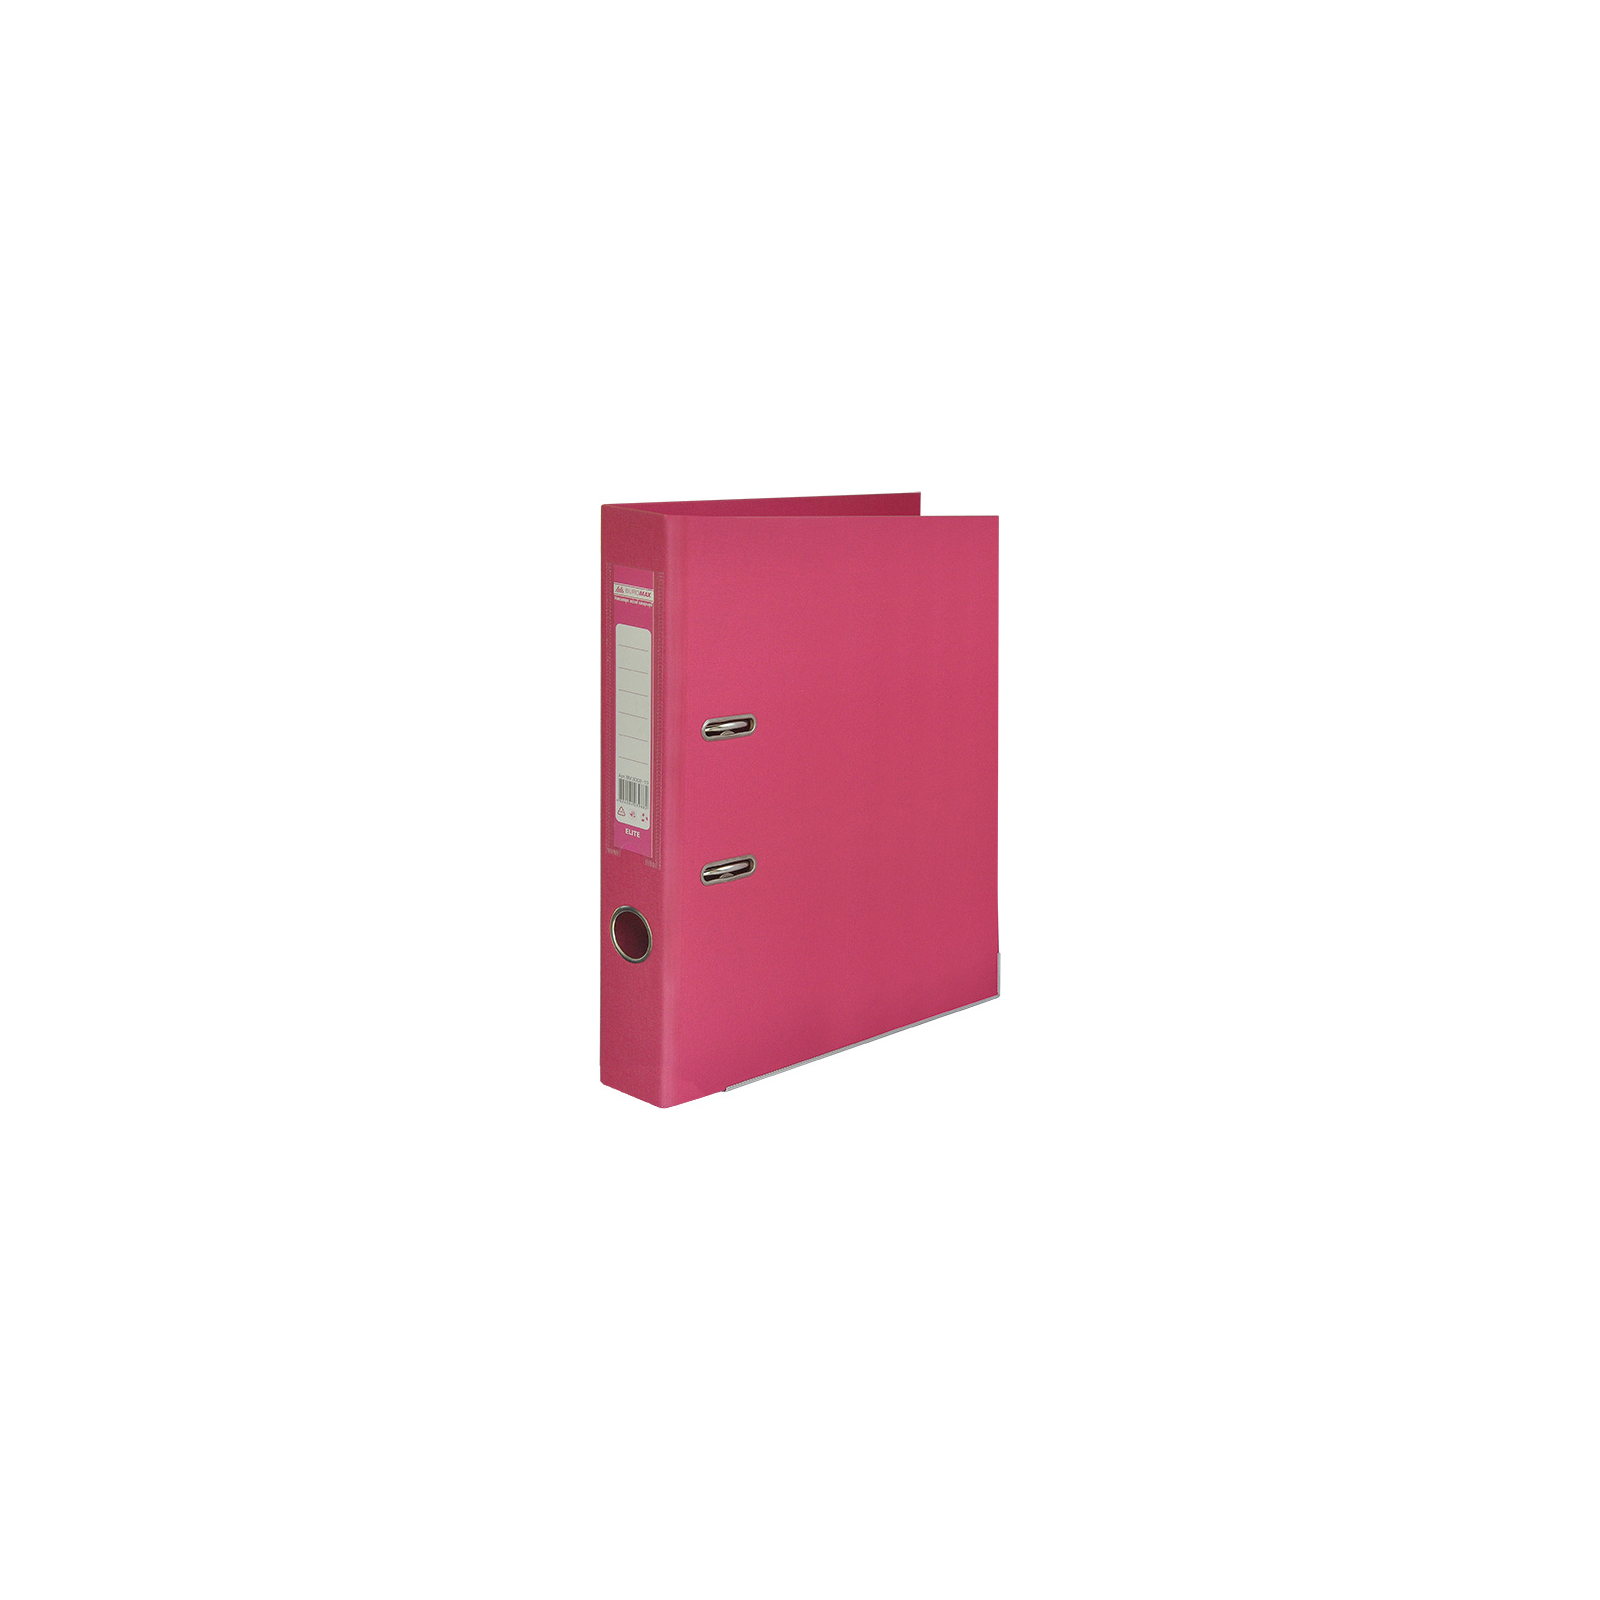 Папка - регистратор Buromax А4 double sided, 50мм, PP, pink, built-up (BM.3002-10с)